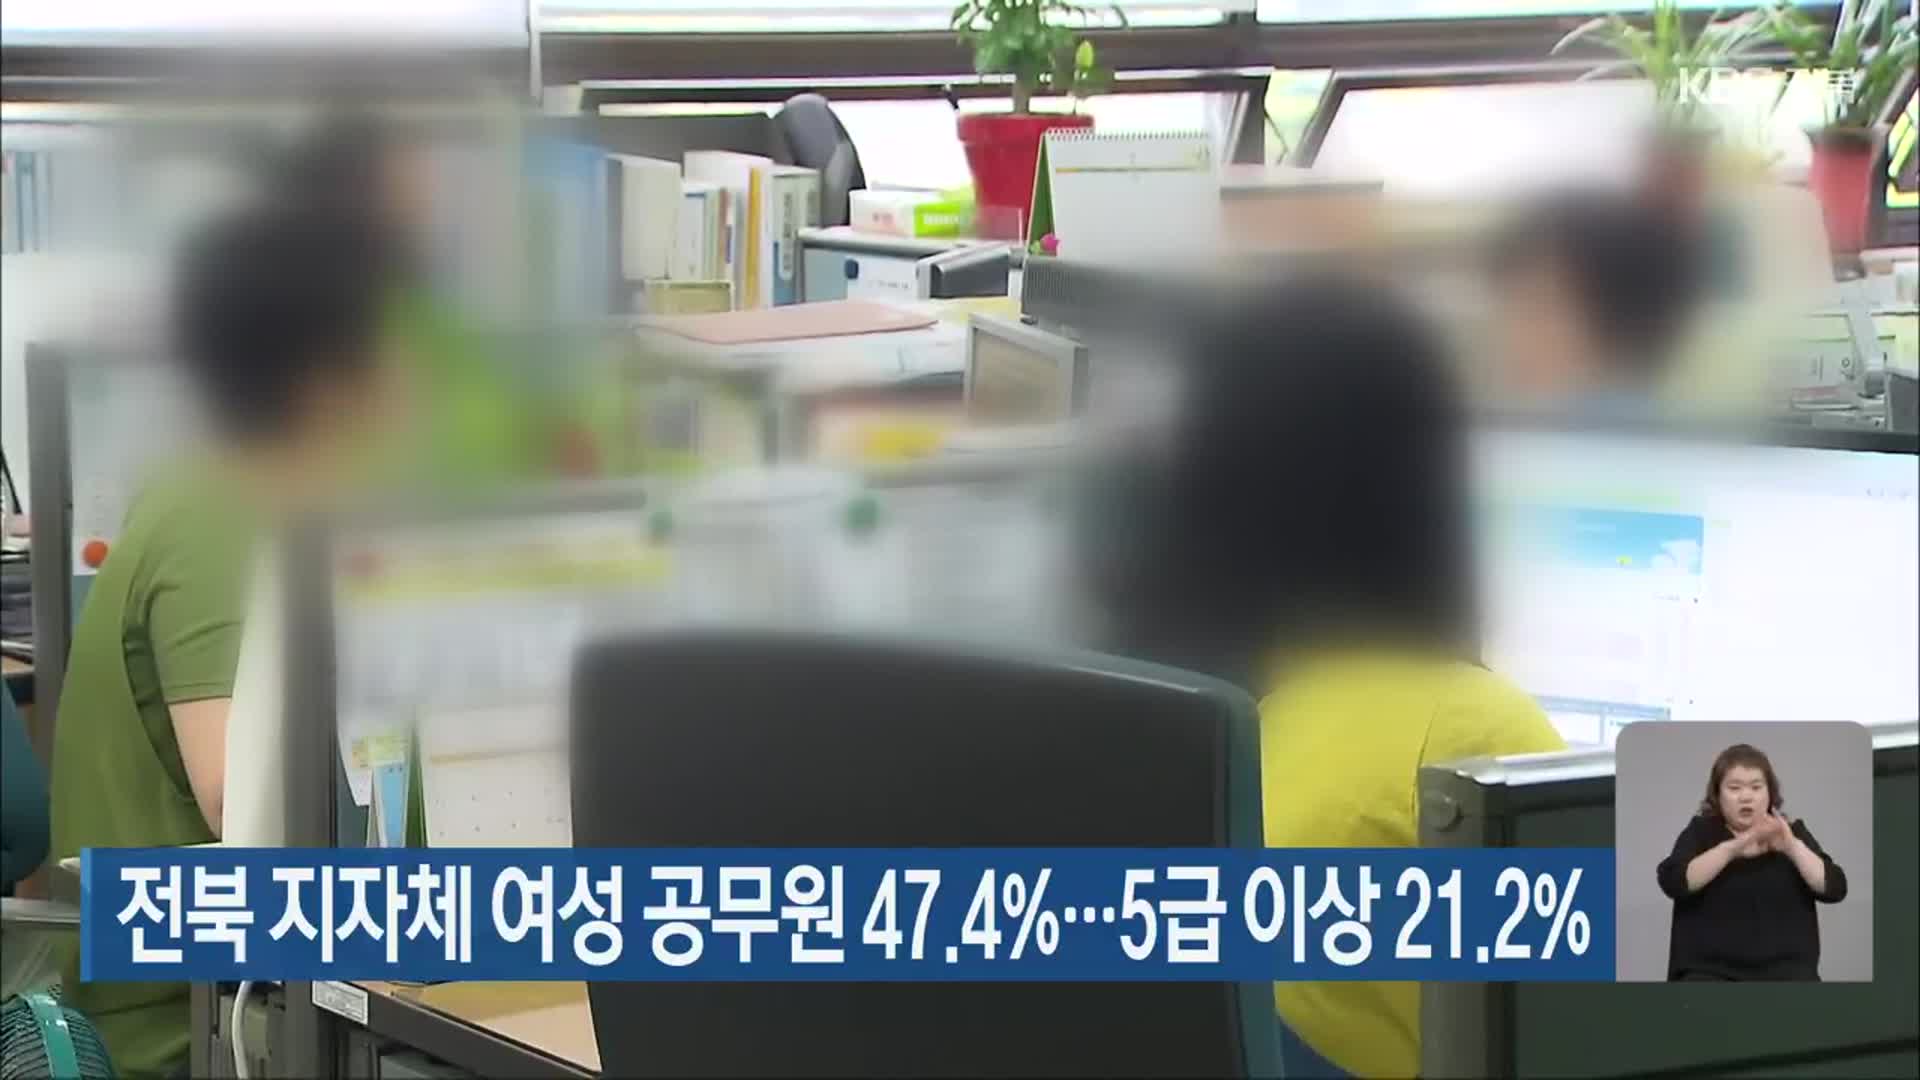 전북 지자체 여성 공무원 47.4%…5급 이상 21.2%